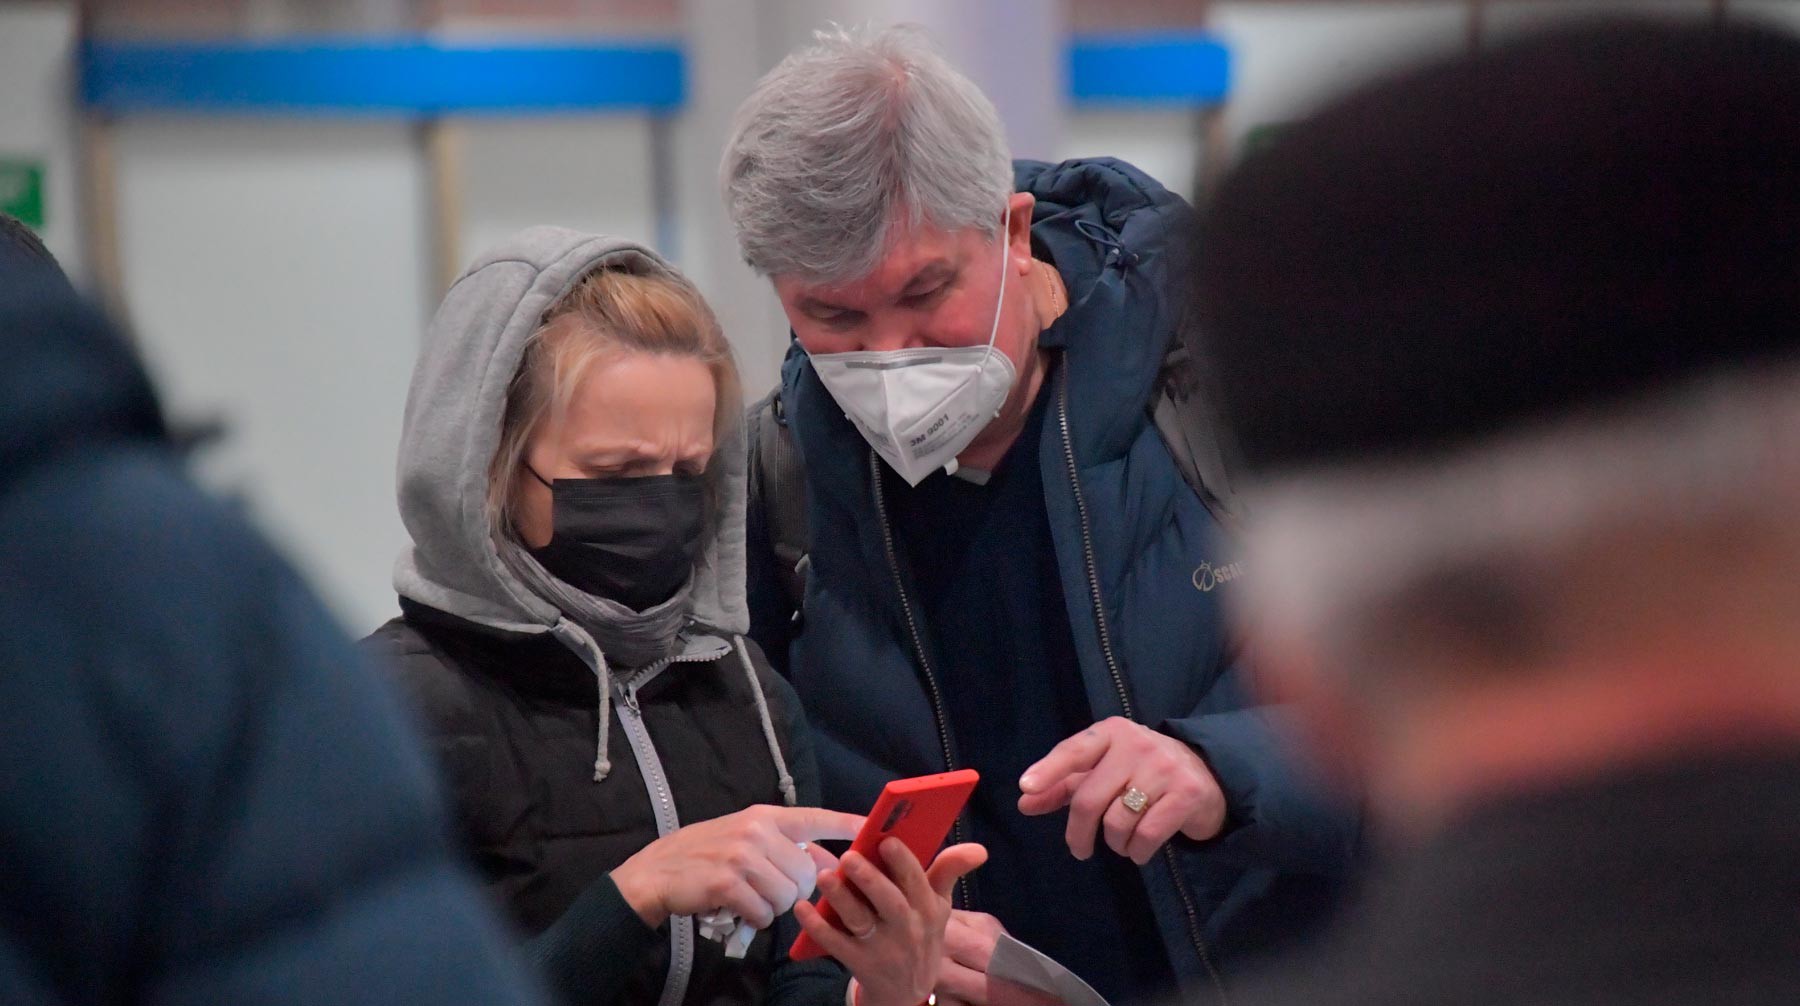 Dailystorm - Из России запретили вывозить медицинские маски и респираторы